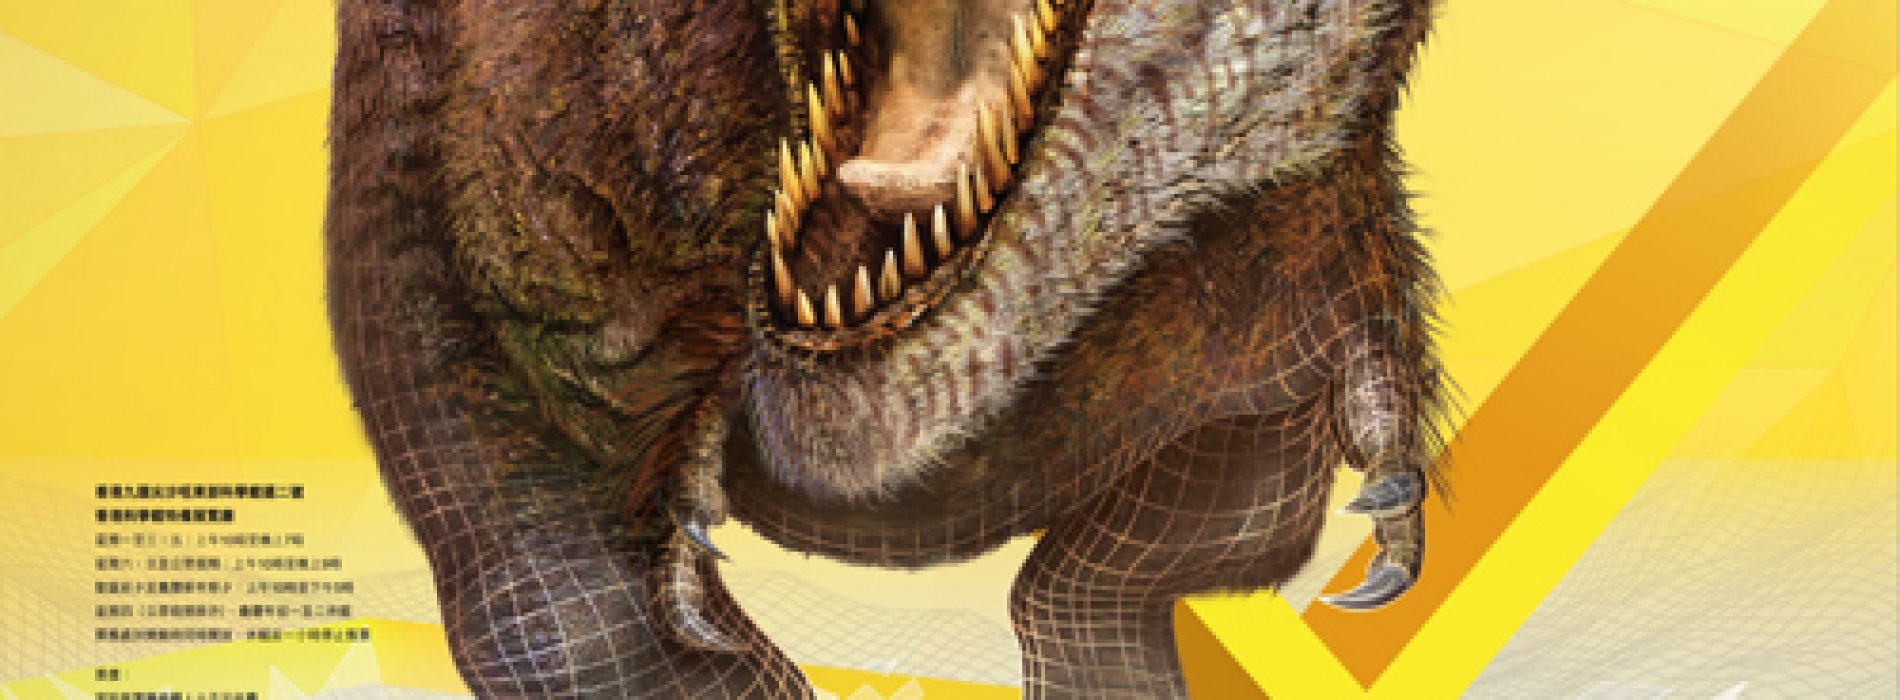 「超感官暴龍展」沒有化石的恐龍世界 【2/12/16至1/3/17】